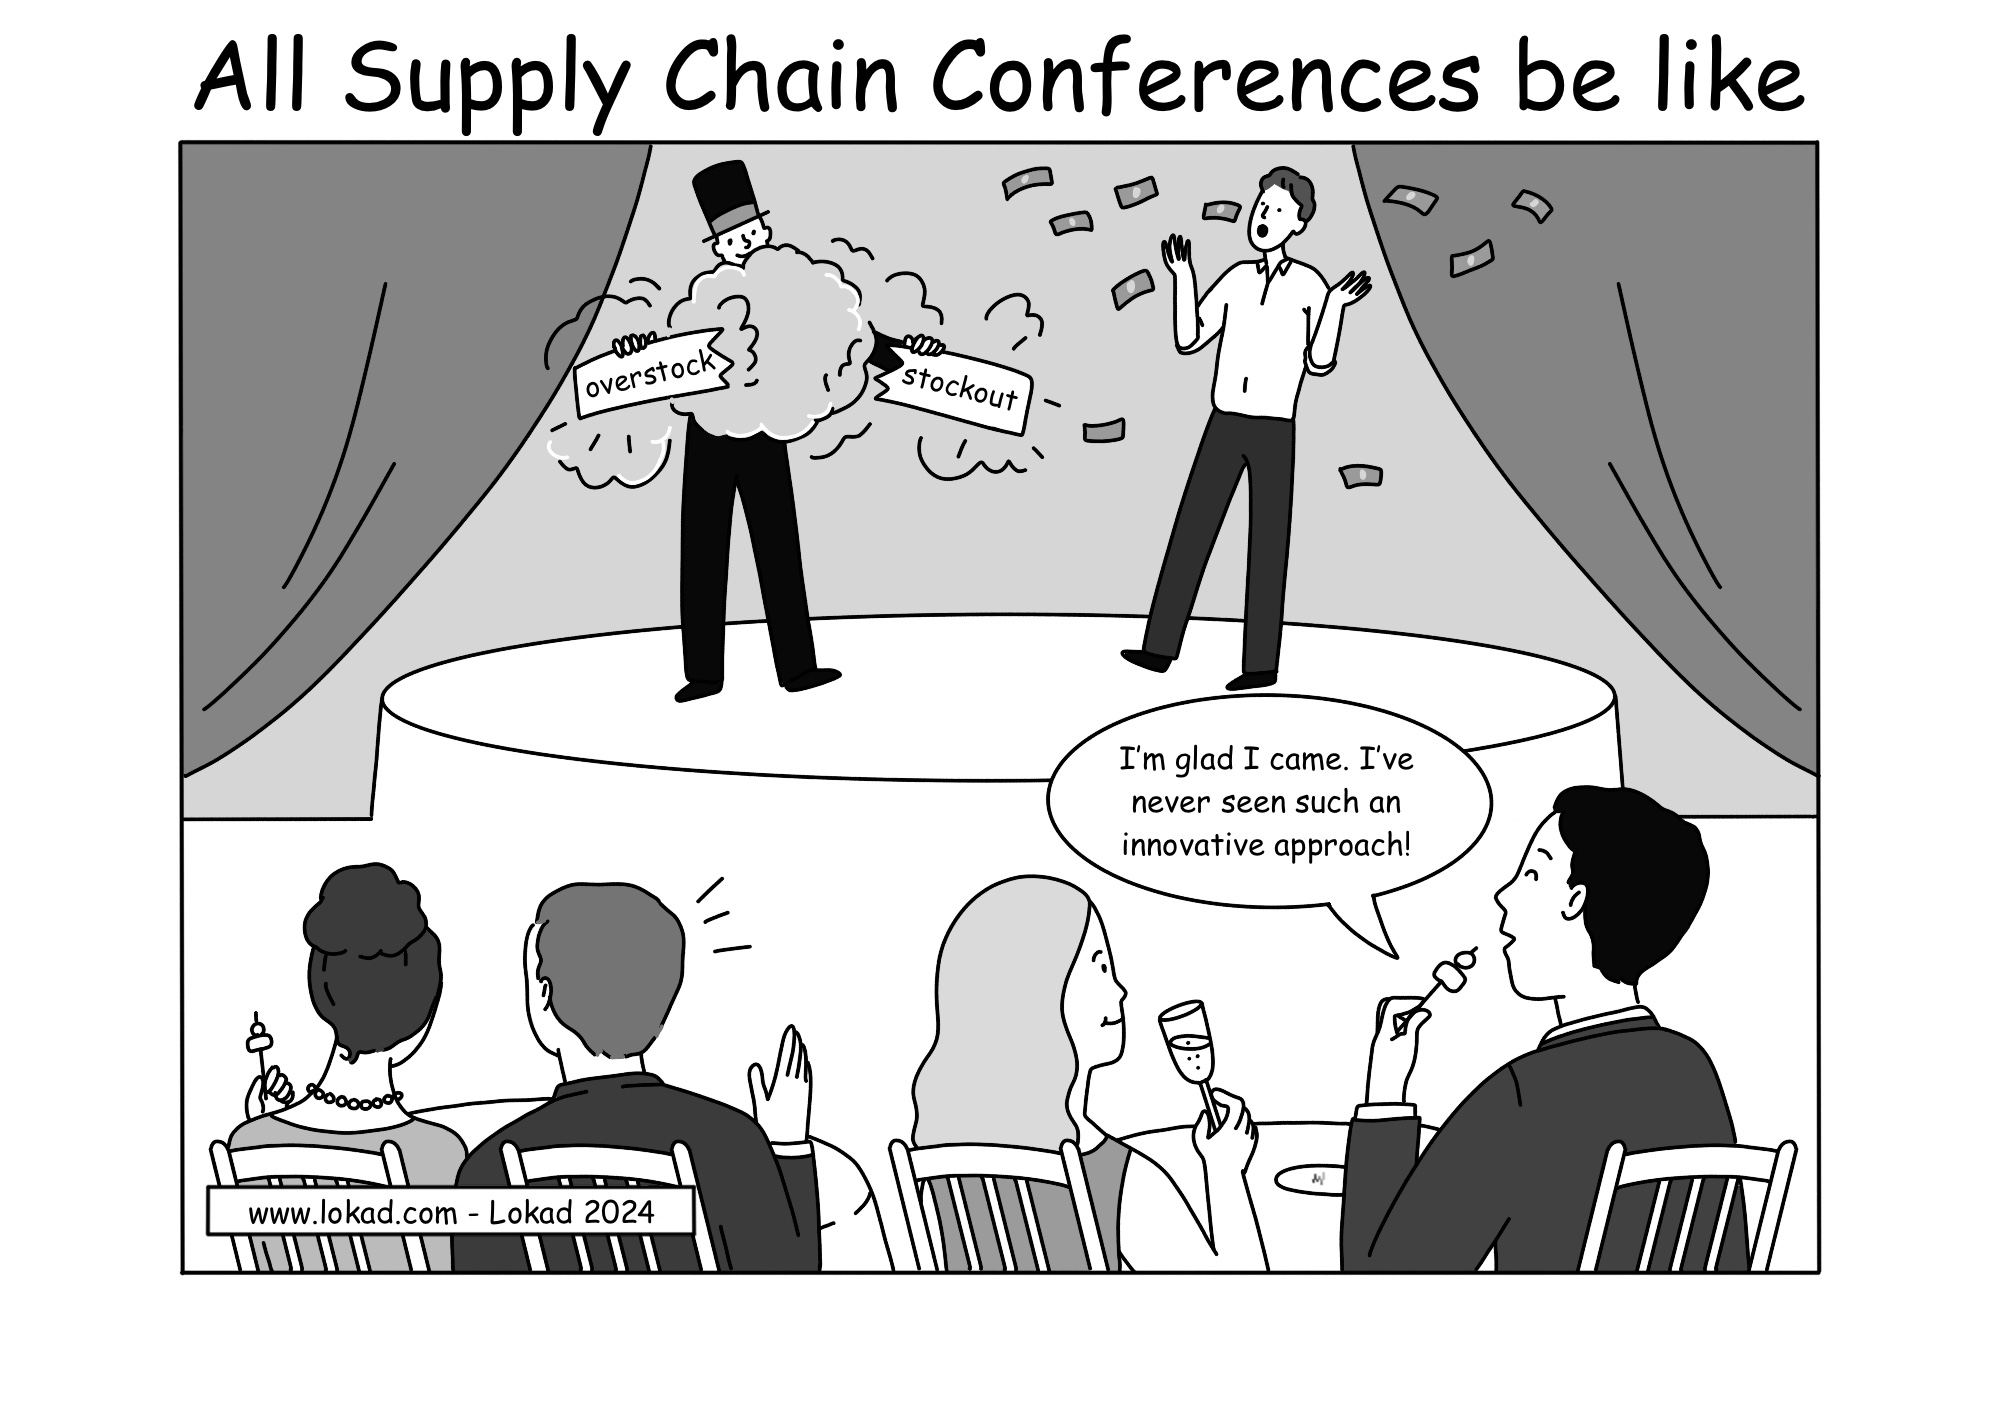 So sind alle Supply Chain Konferenzen